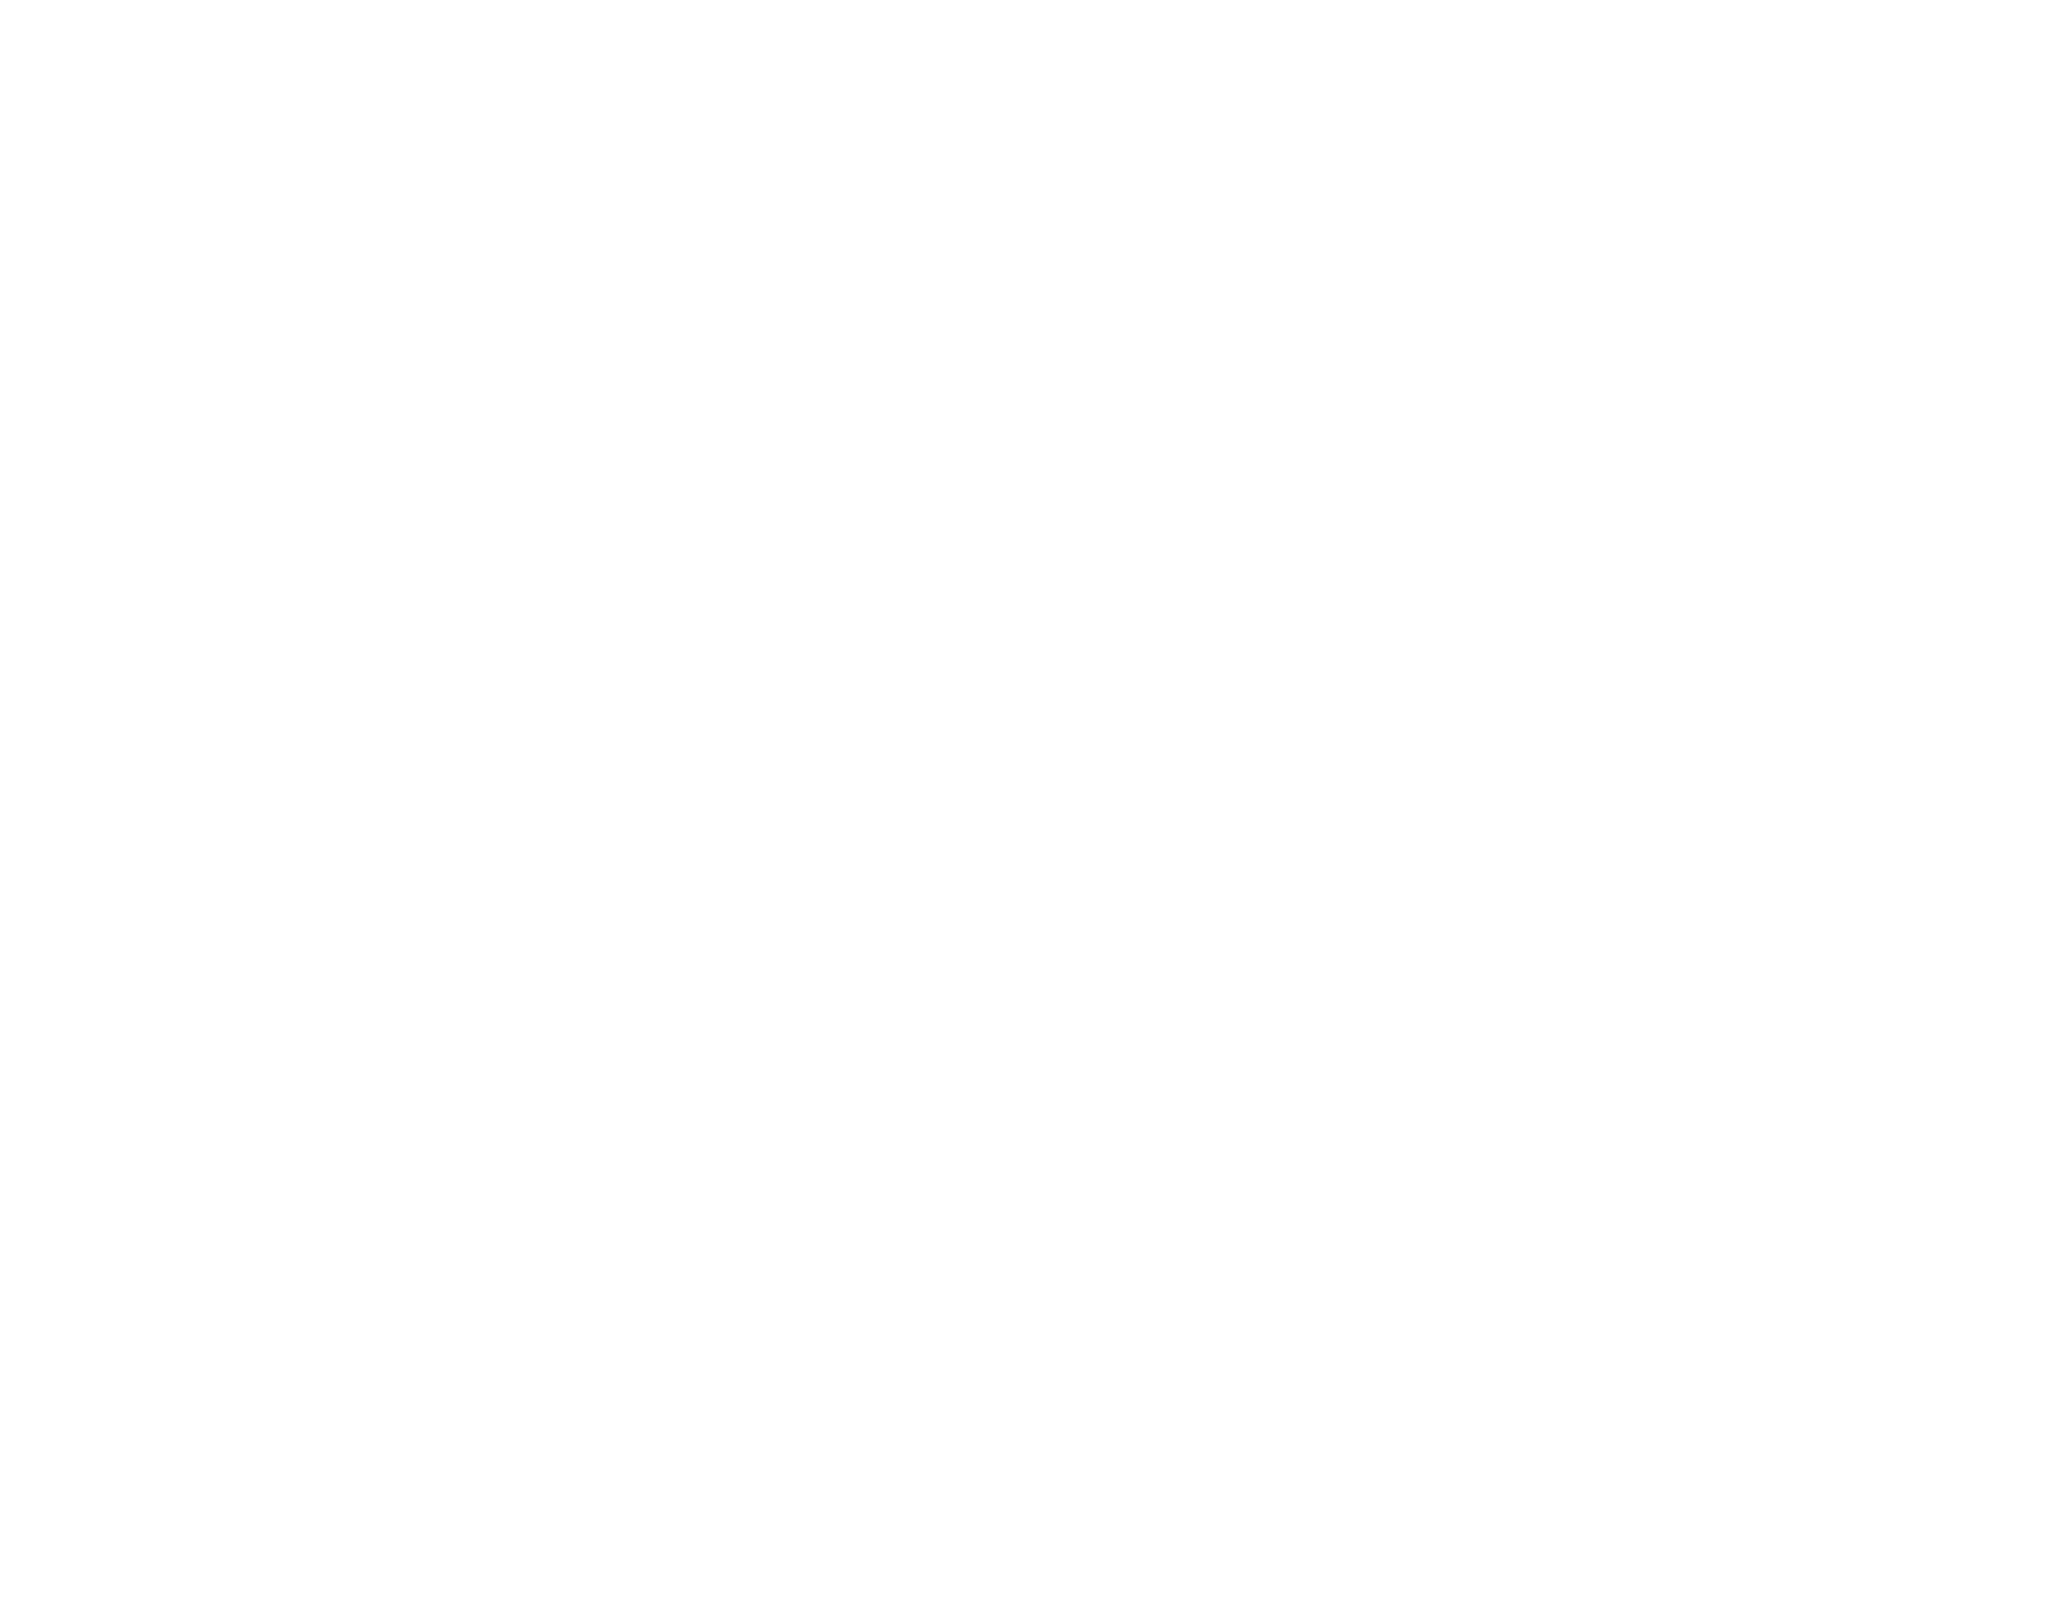 Cooler Master Logo wthout Slogan - White